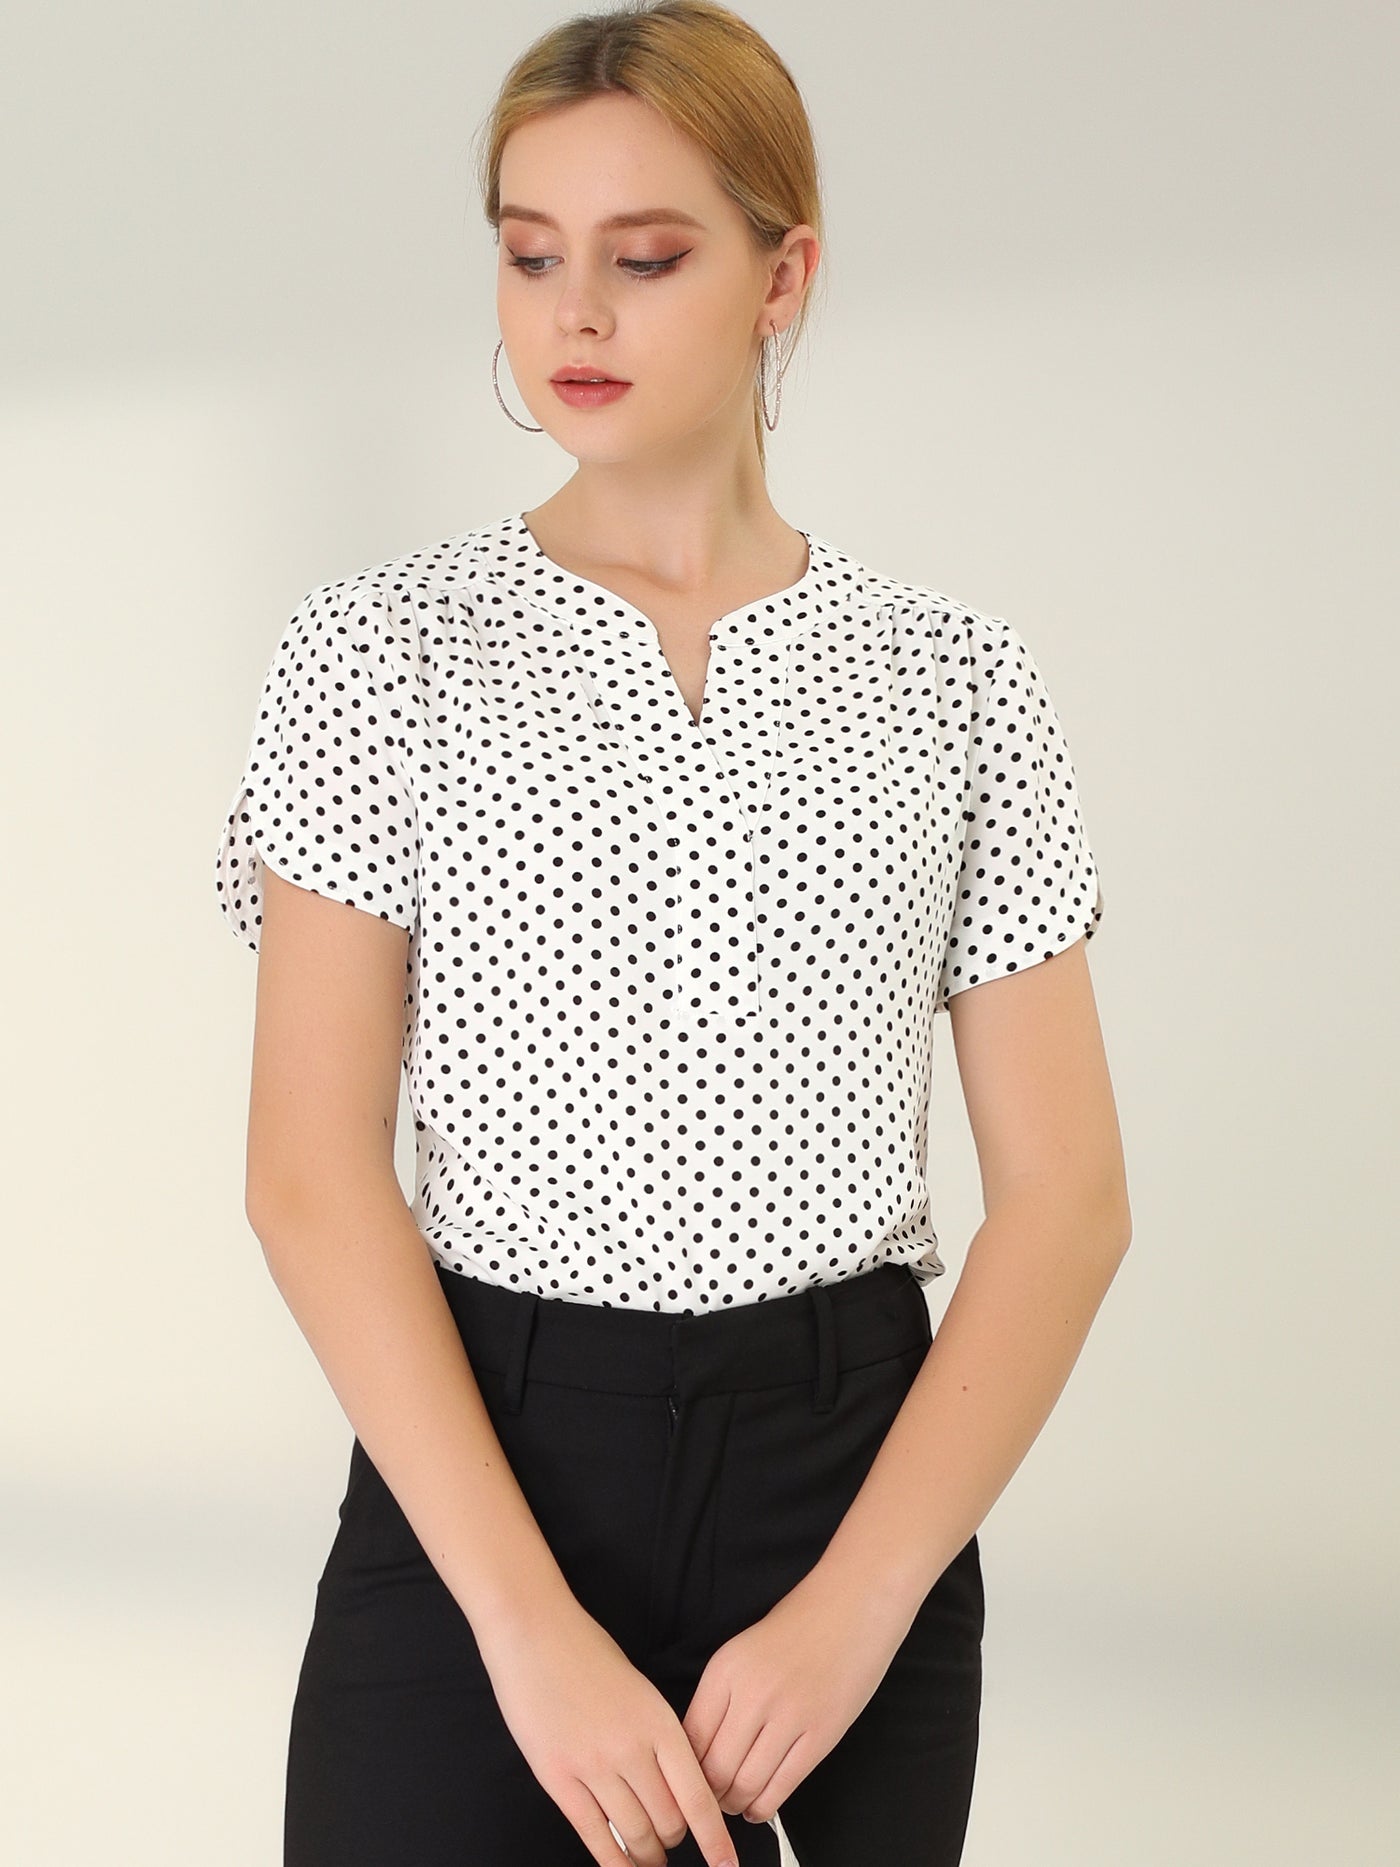 Allegra K Polka Dots Print V Neck Short Sleeve Elegant Work Office Tops